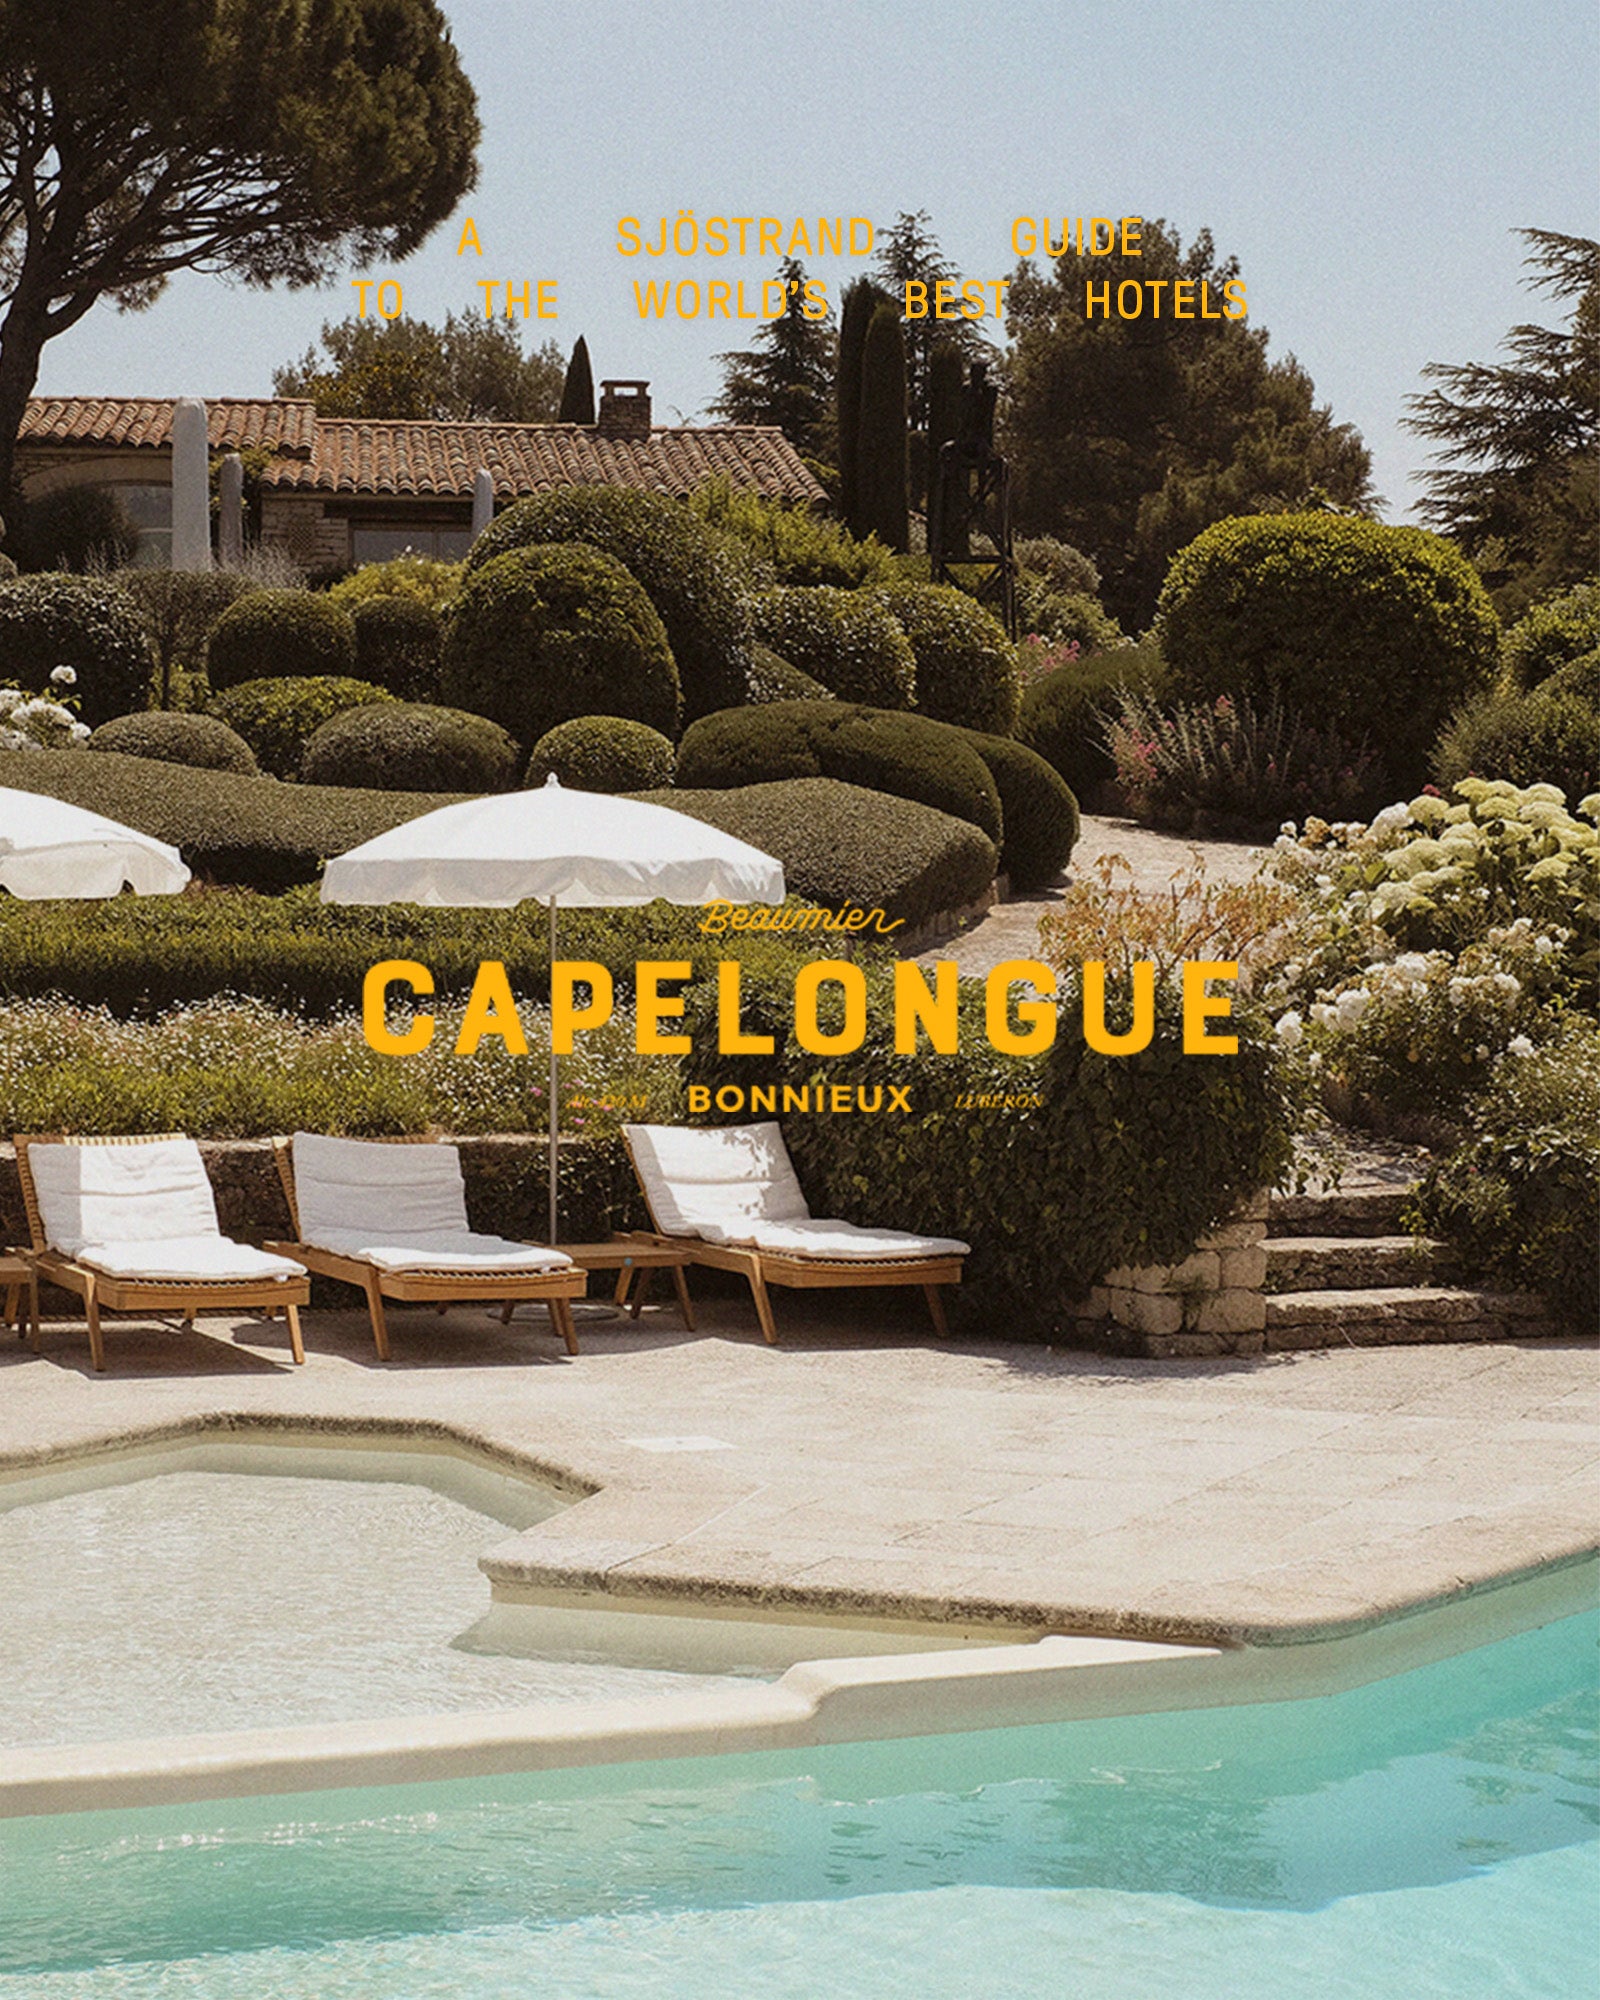 En Sjöstrands guide till världens bästa hotell - Capelongue i Provence.split-banner image